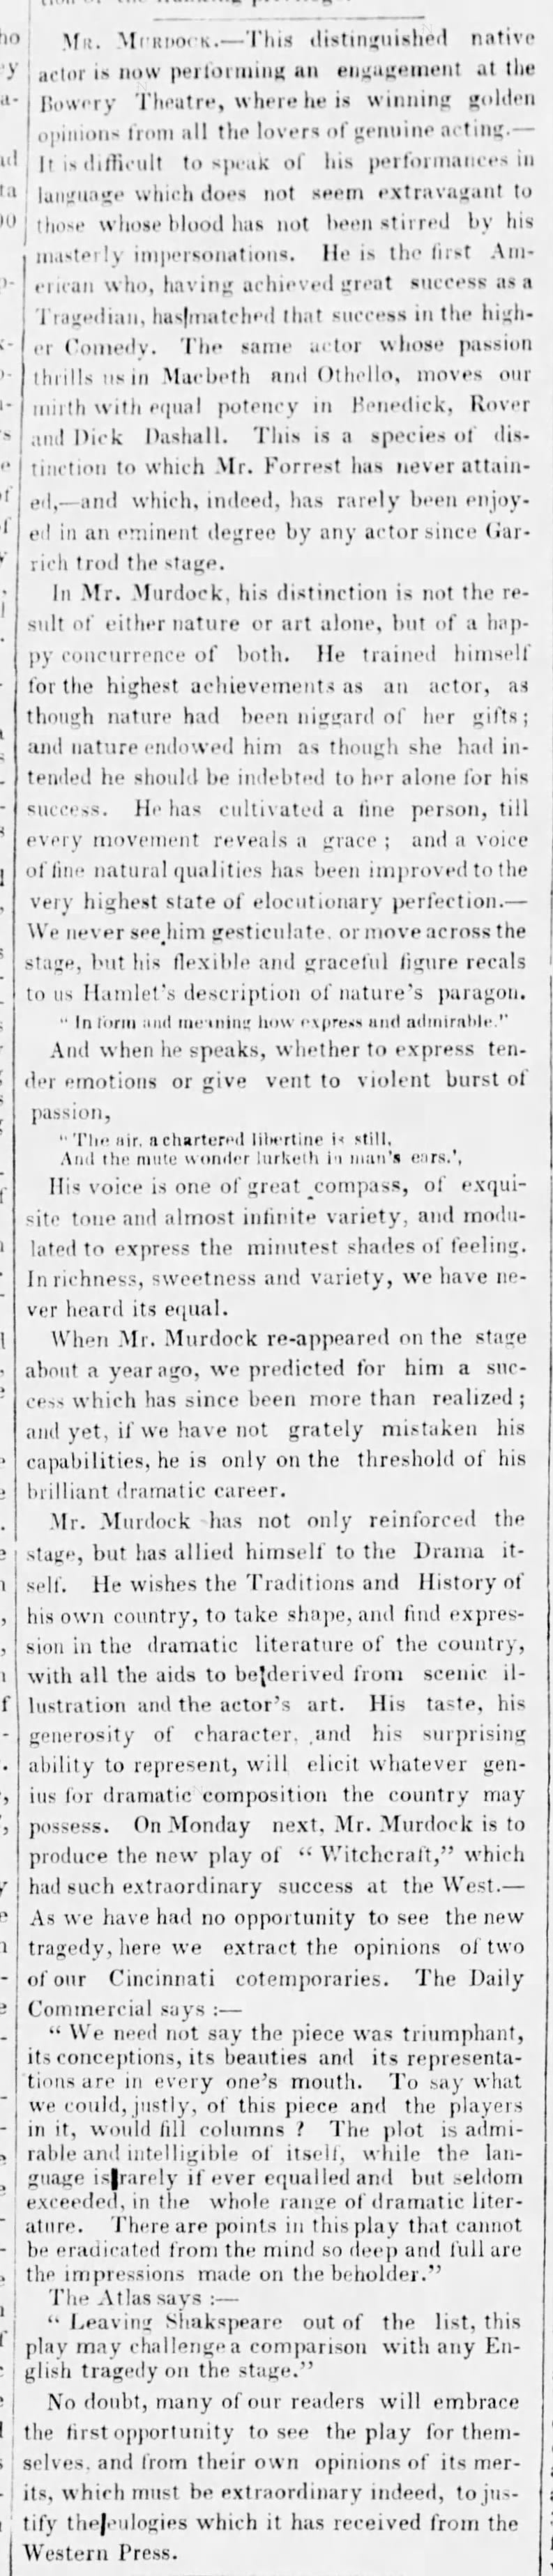 Feature on Murdoch, Brooklyn Evening Star, 19 May 1847